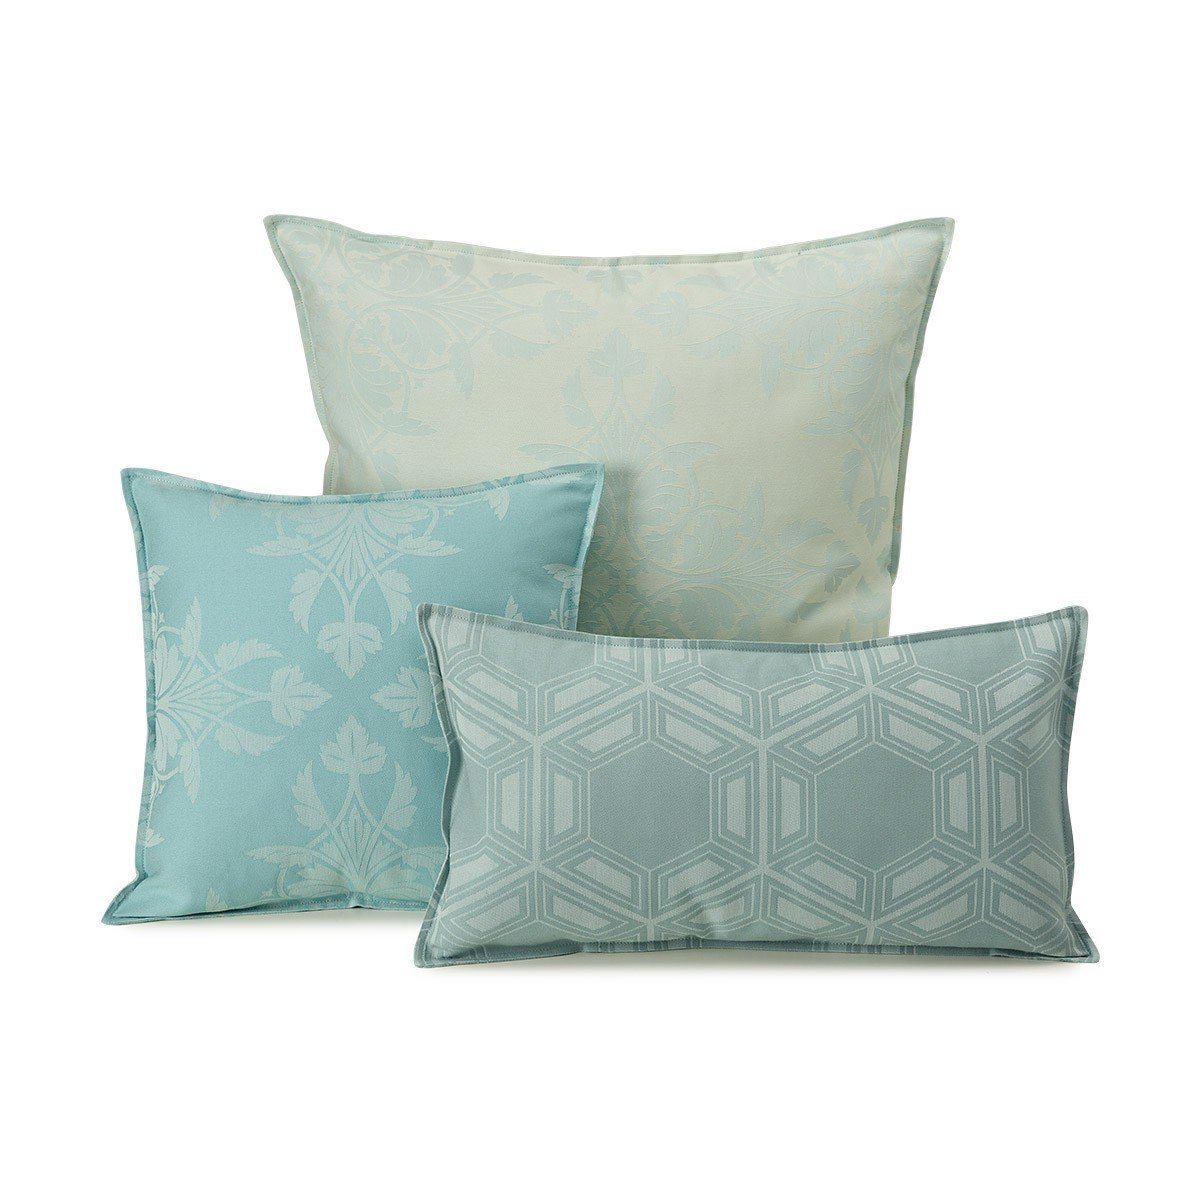 Syracuse Aqua Outdoor Pillow Collection